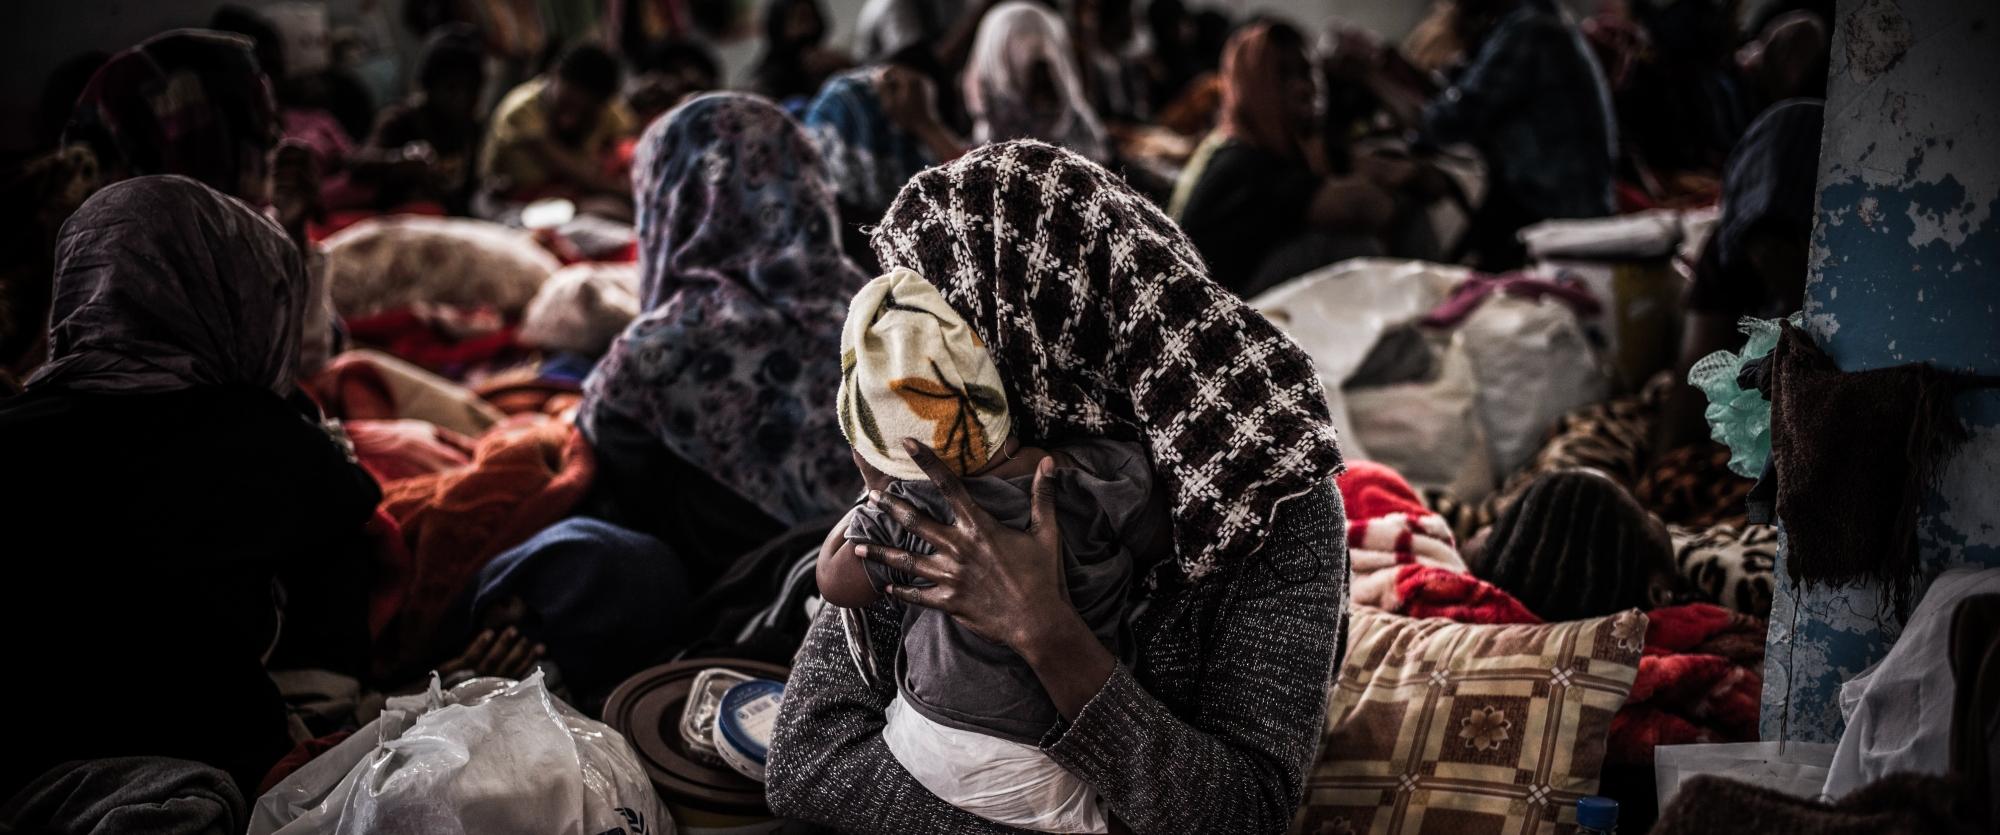 Femmes et enfants détenus dans le centre de détention de Sorman réservé aux femmes, à environ 60 km à l'ouest de Tripoli, en Libye. 